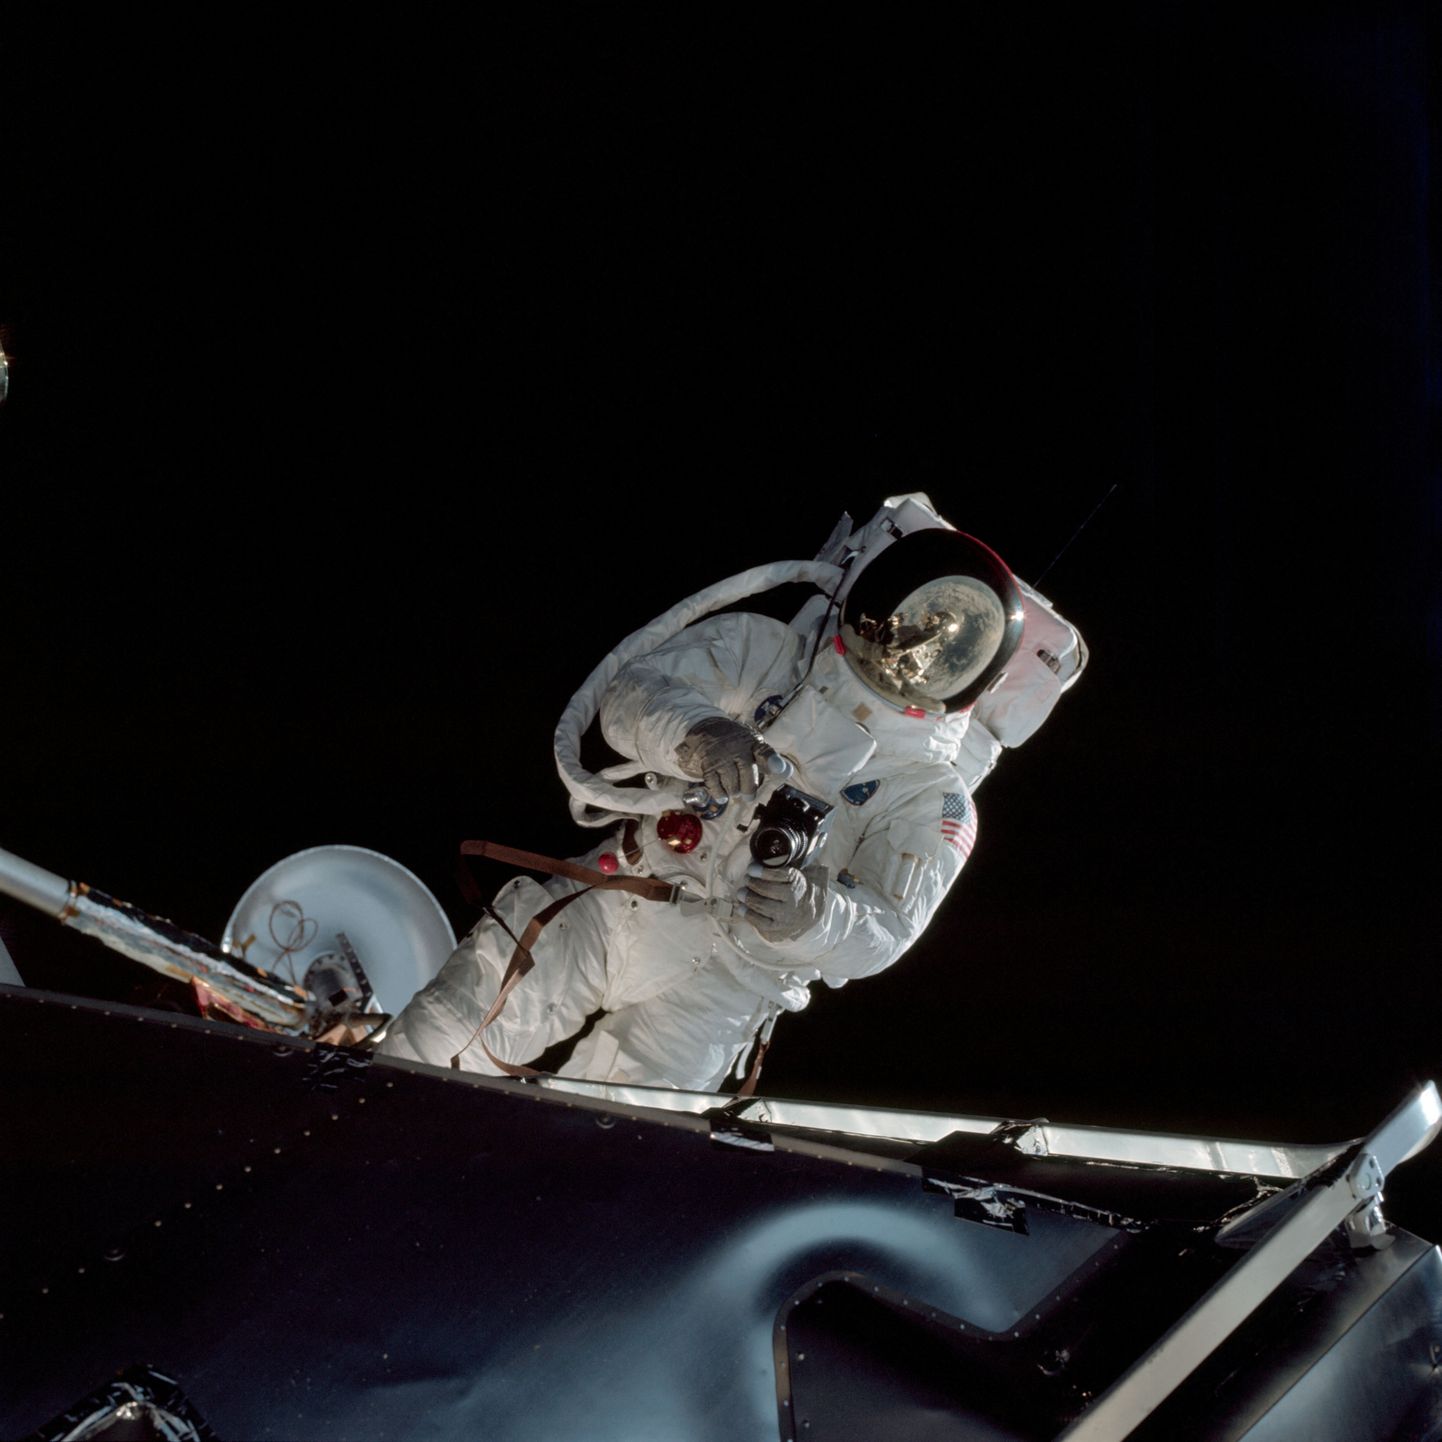 Astronaut Russell Schweickart kosmosekõnnil. Pilt on illustreeriv.